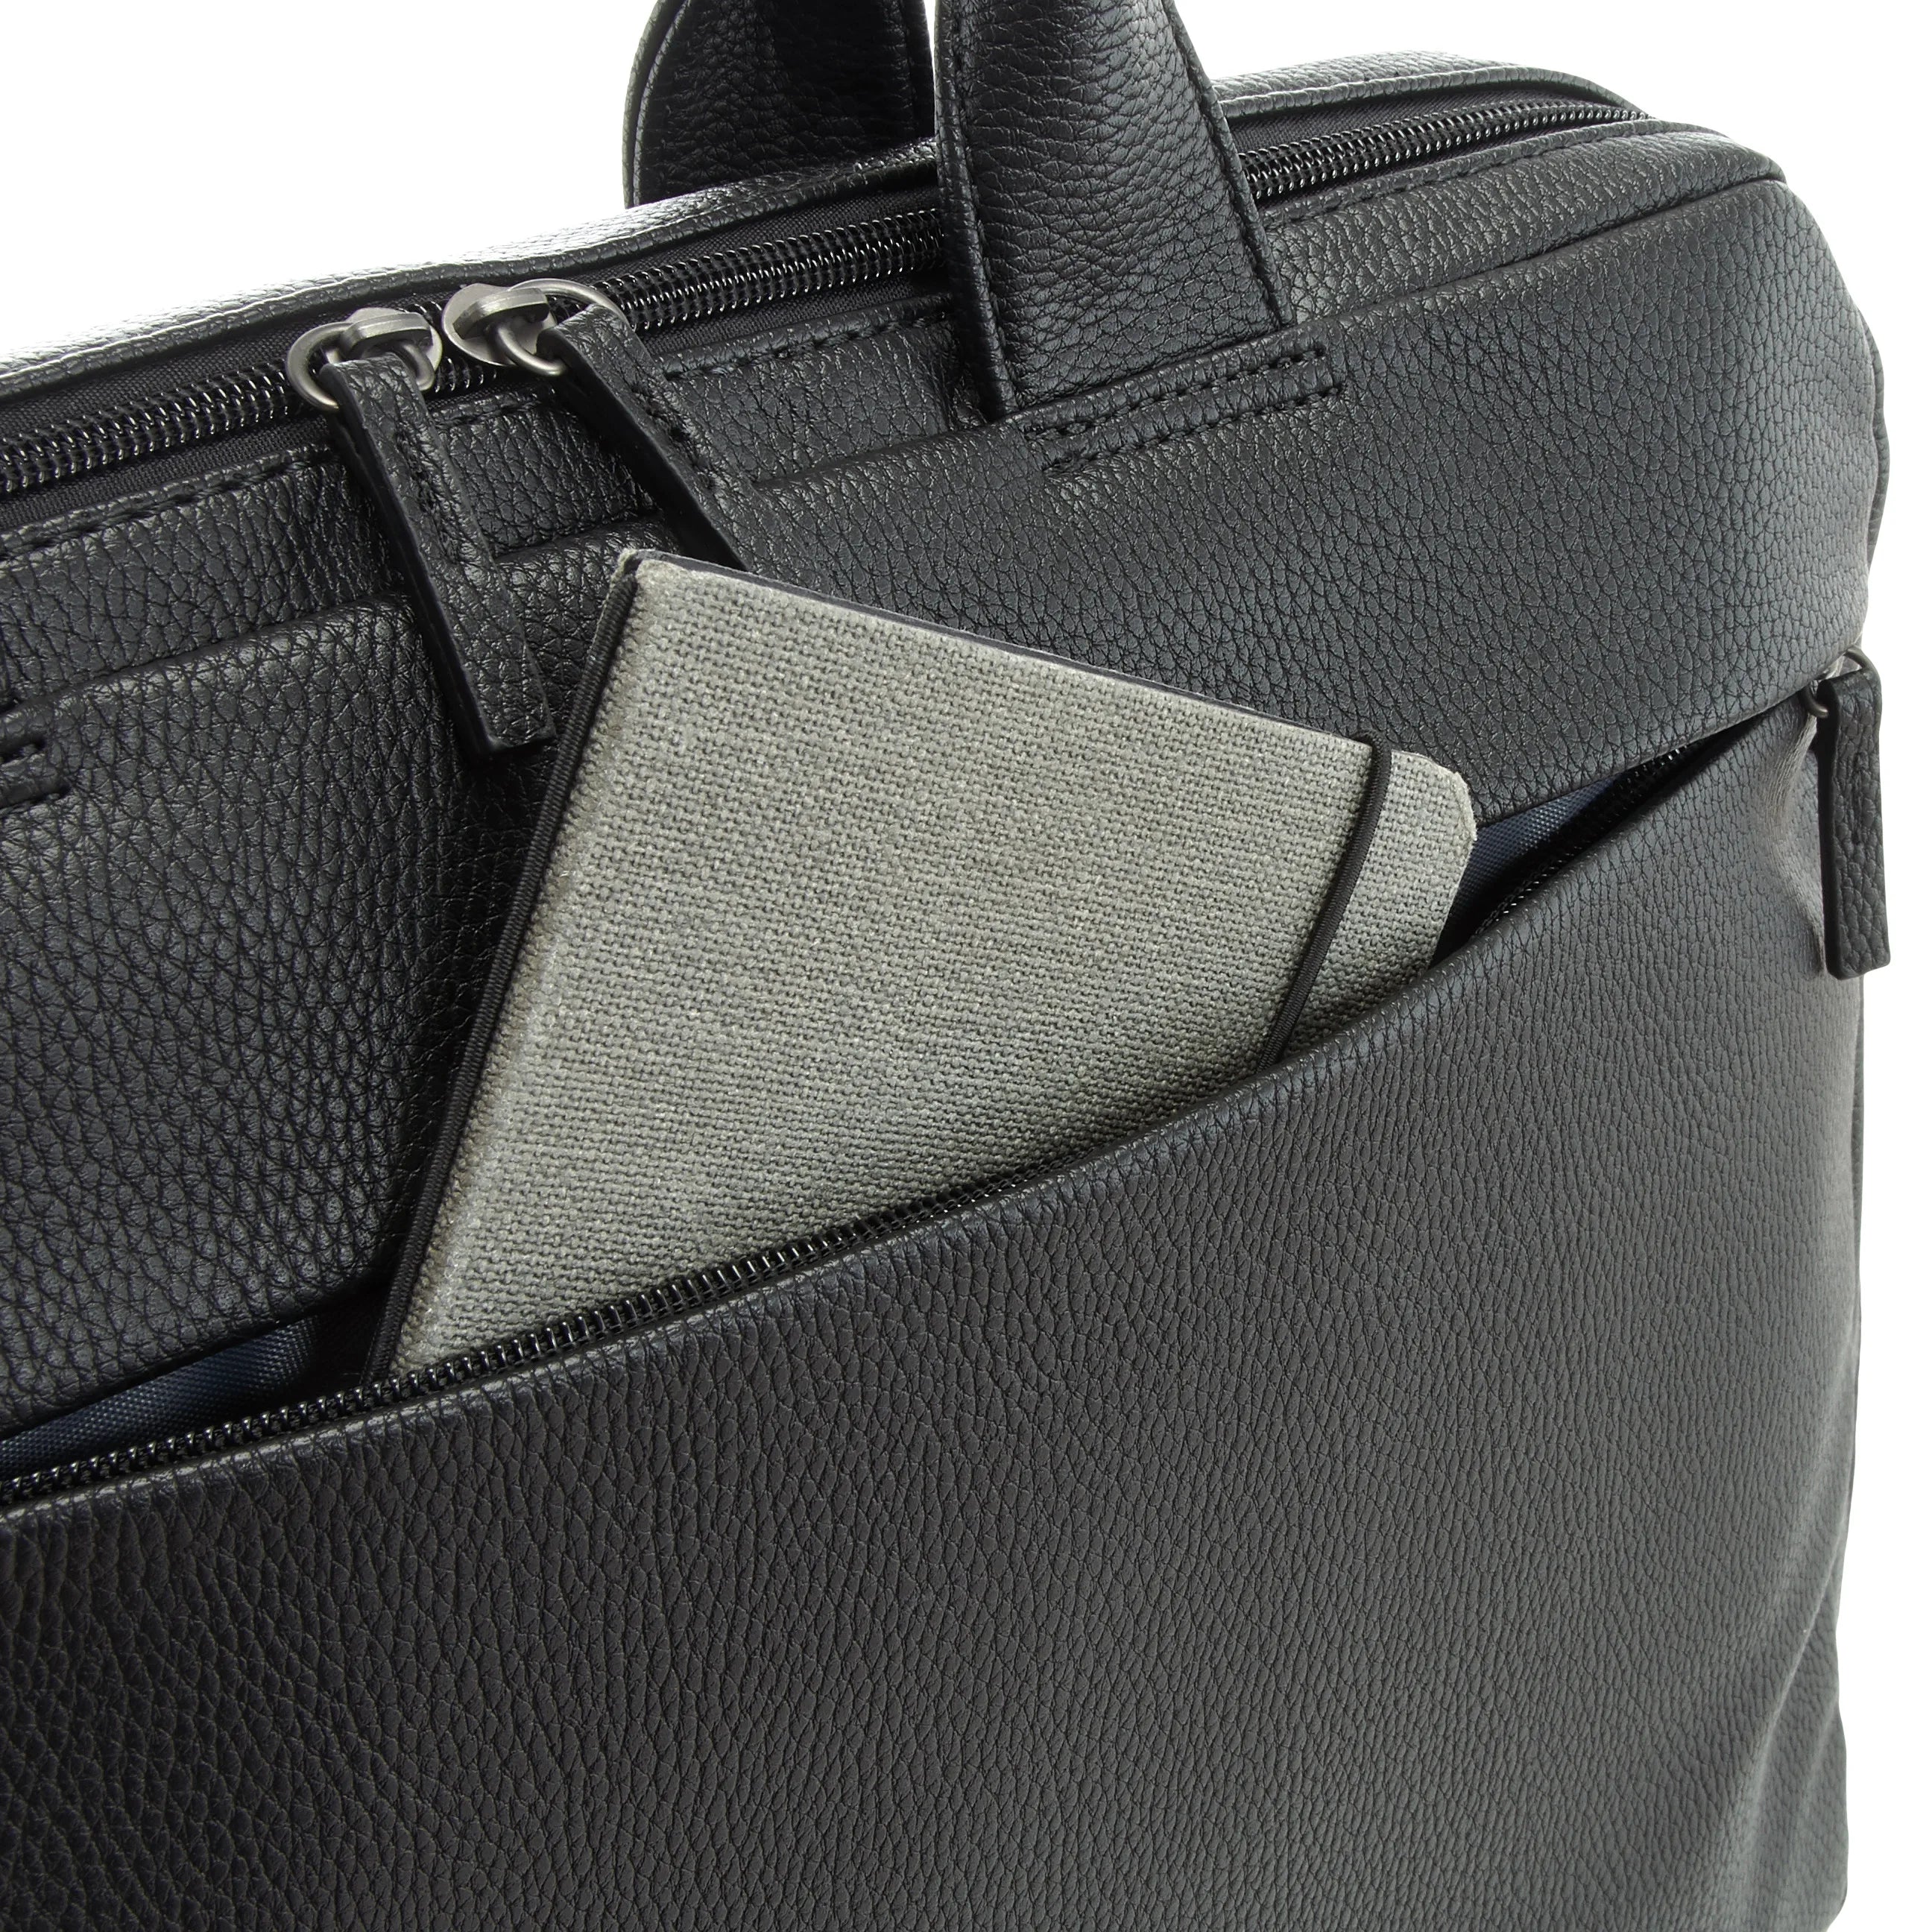 Jost Bodo II business bag 40 cm - black